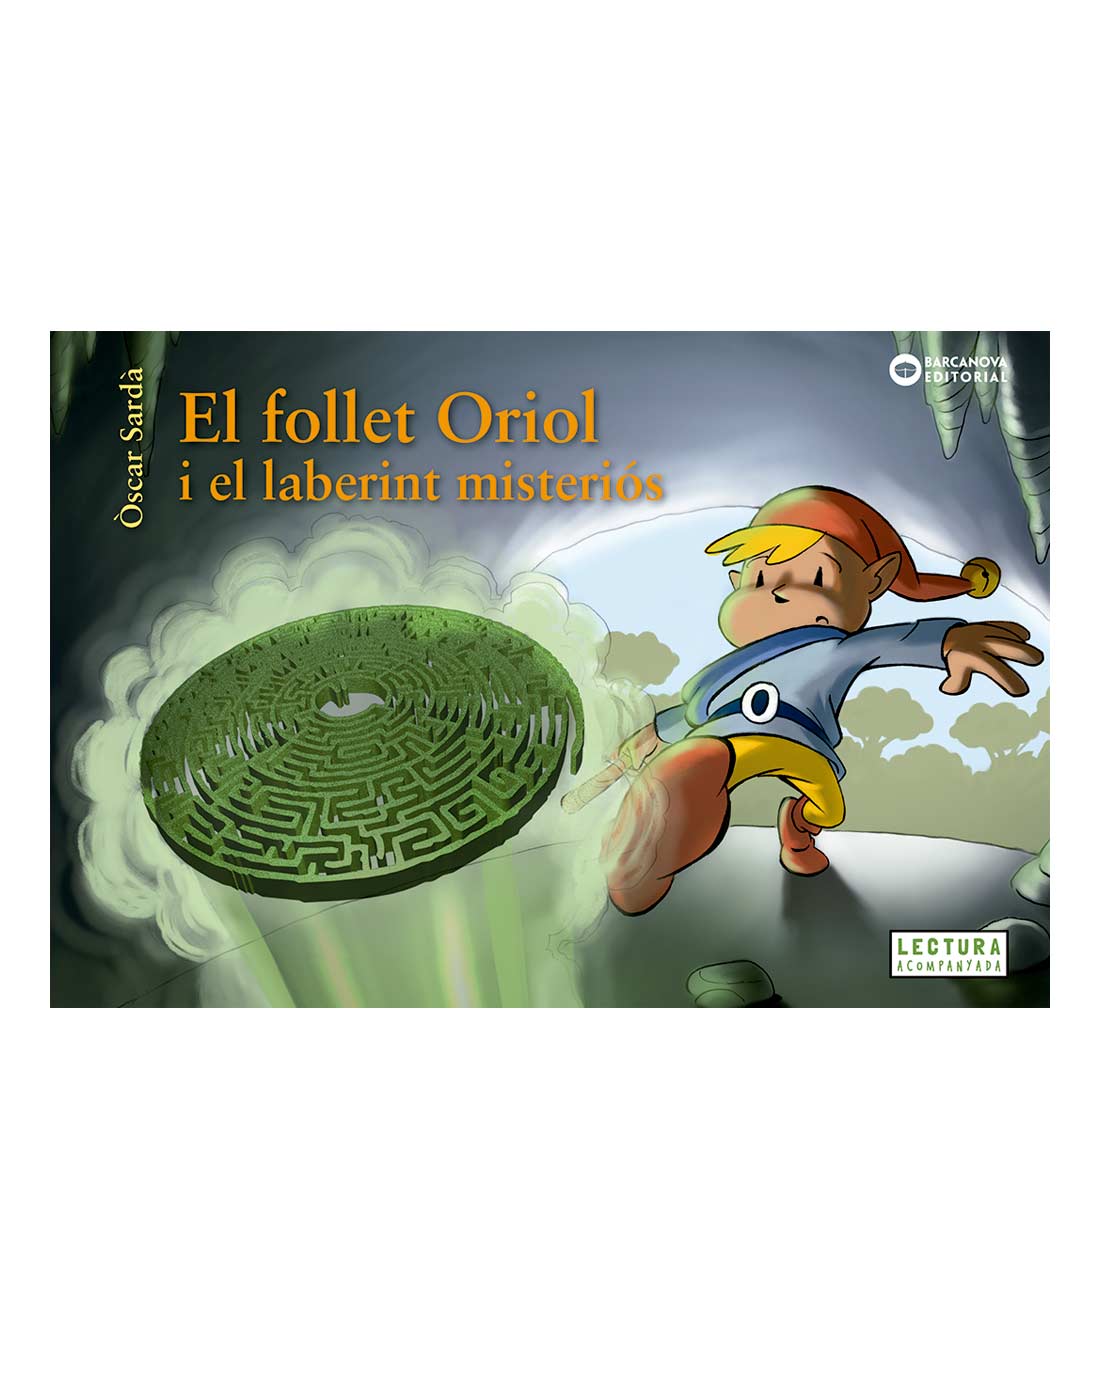 El follet Oriol i el laberint misteriós